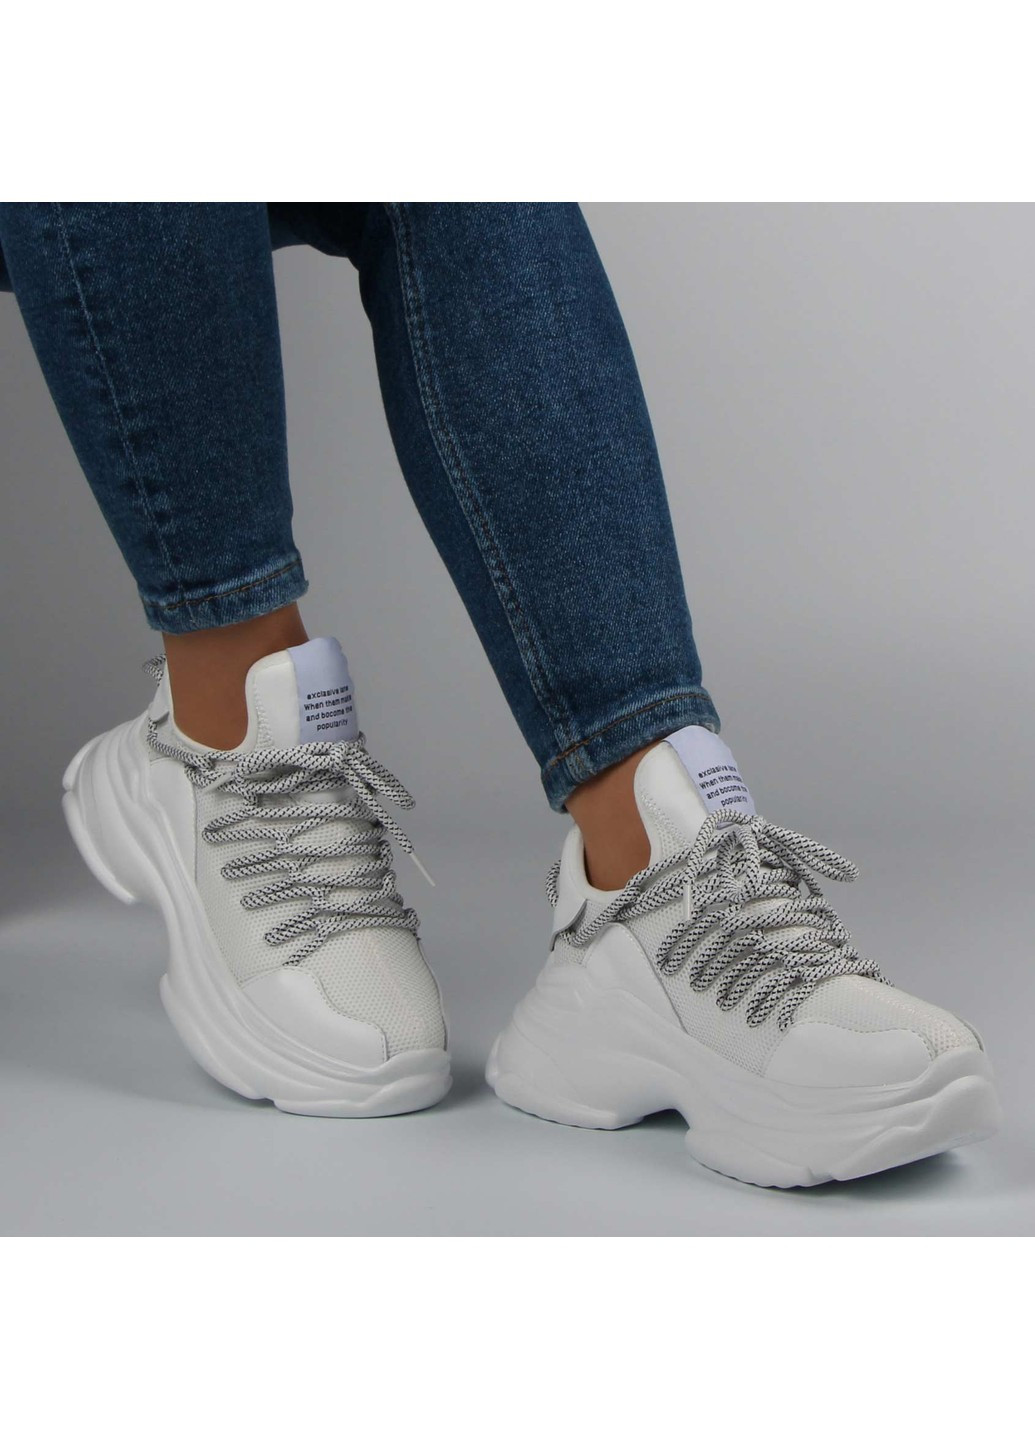 Белые демисезонные женские кроссовки 197062 Lifexpert